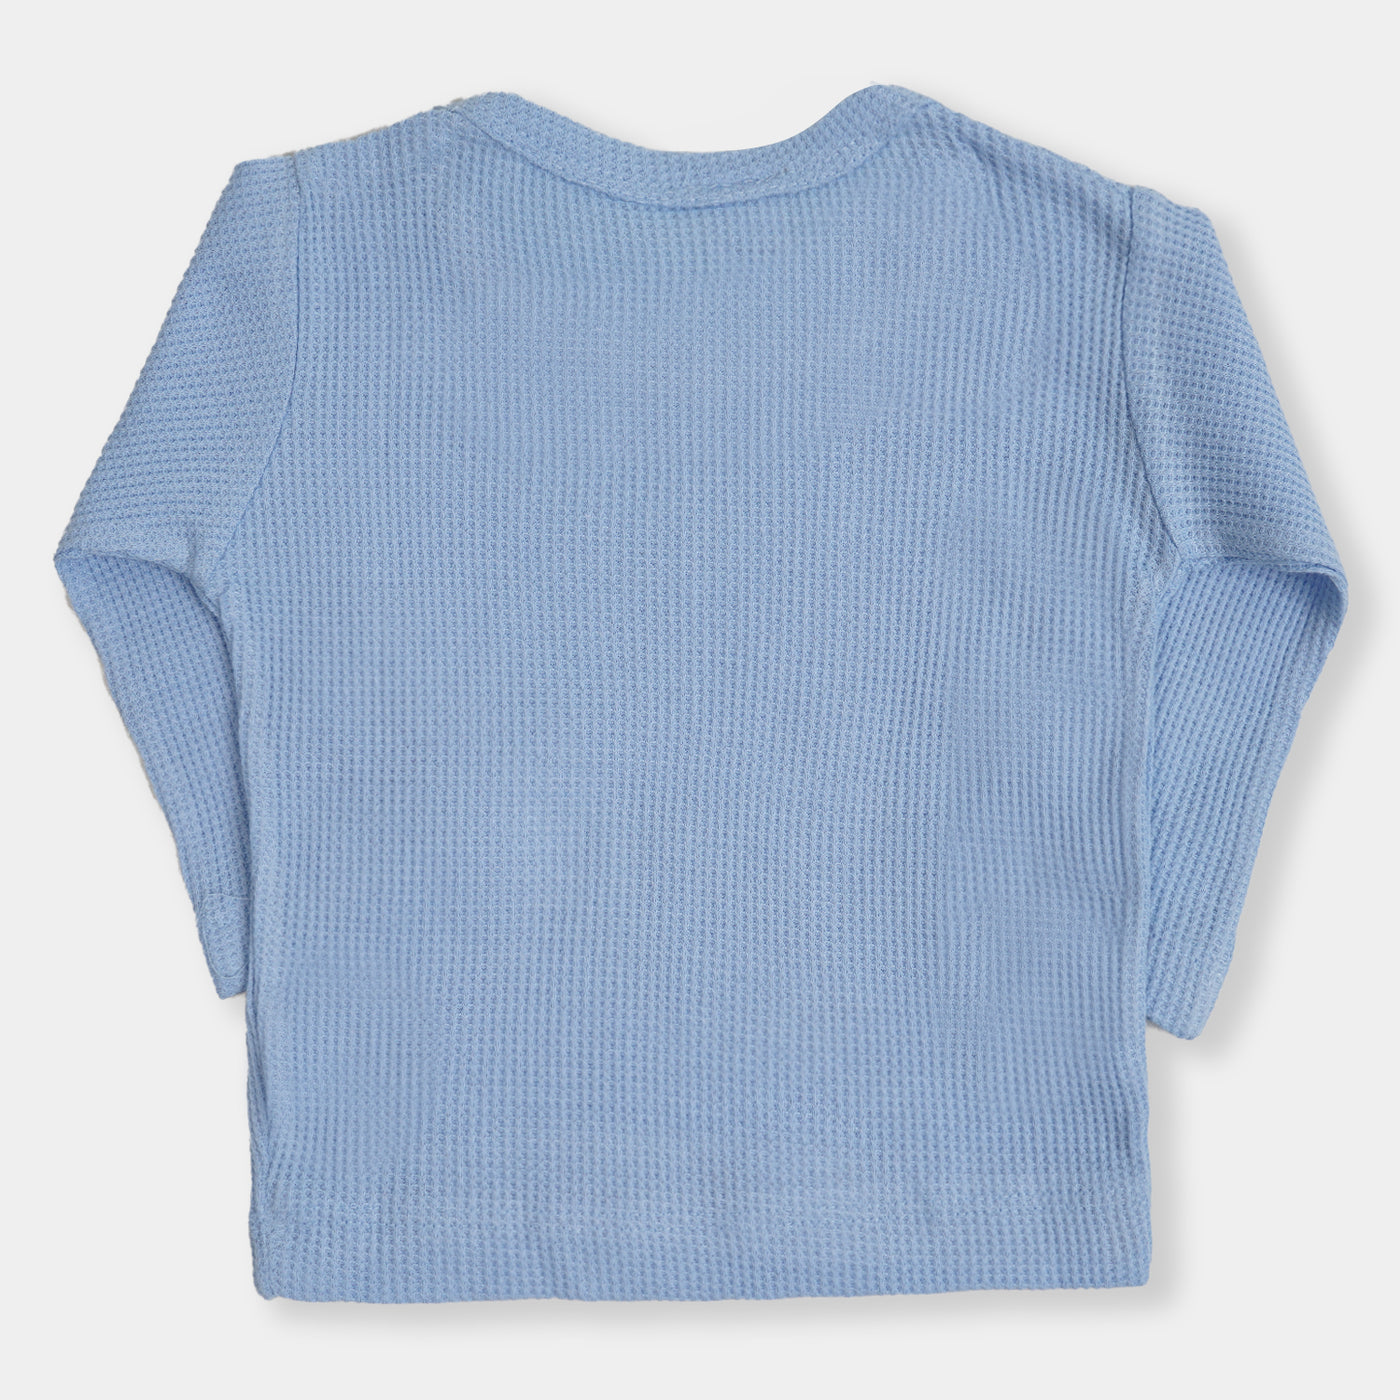 Infant Unisex Thermal Suit - L.Blue